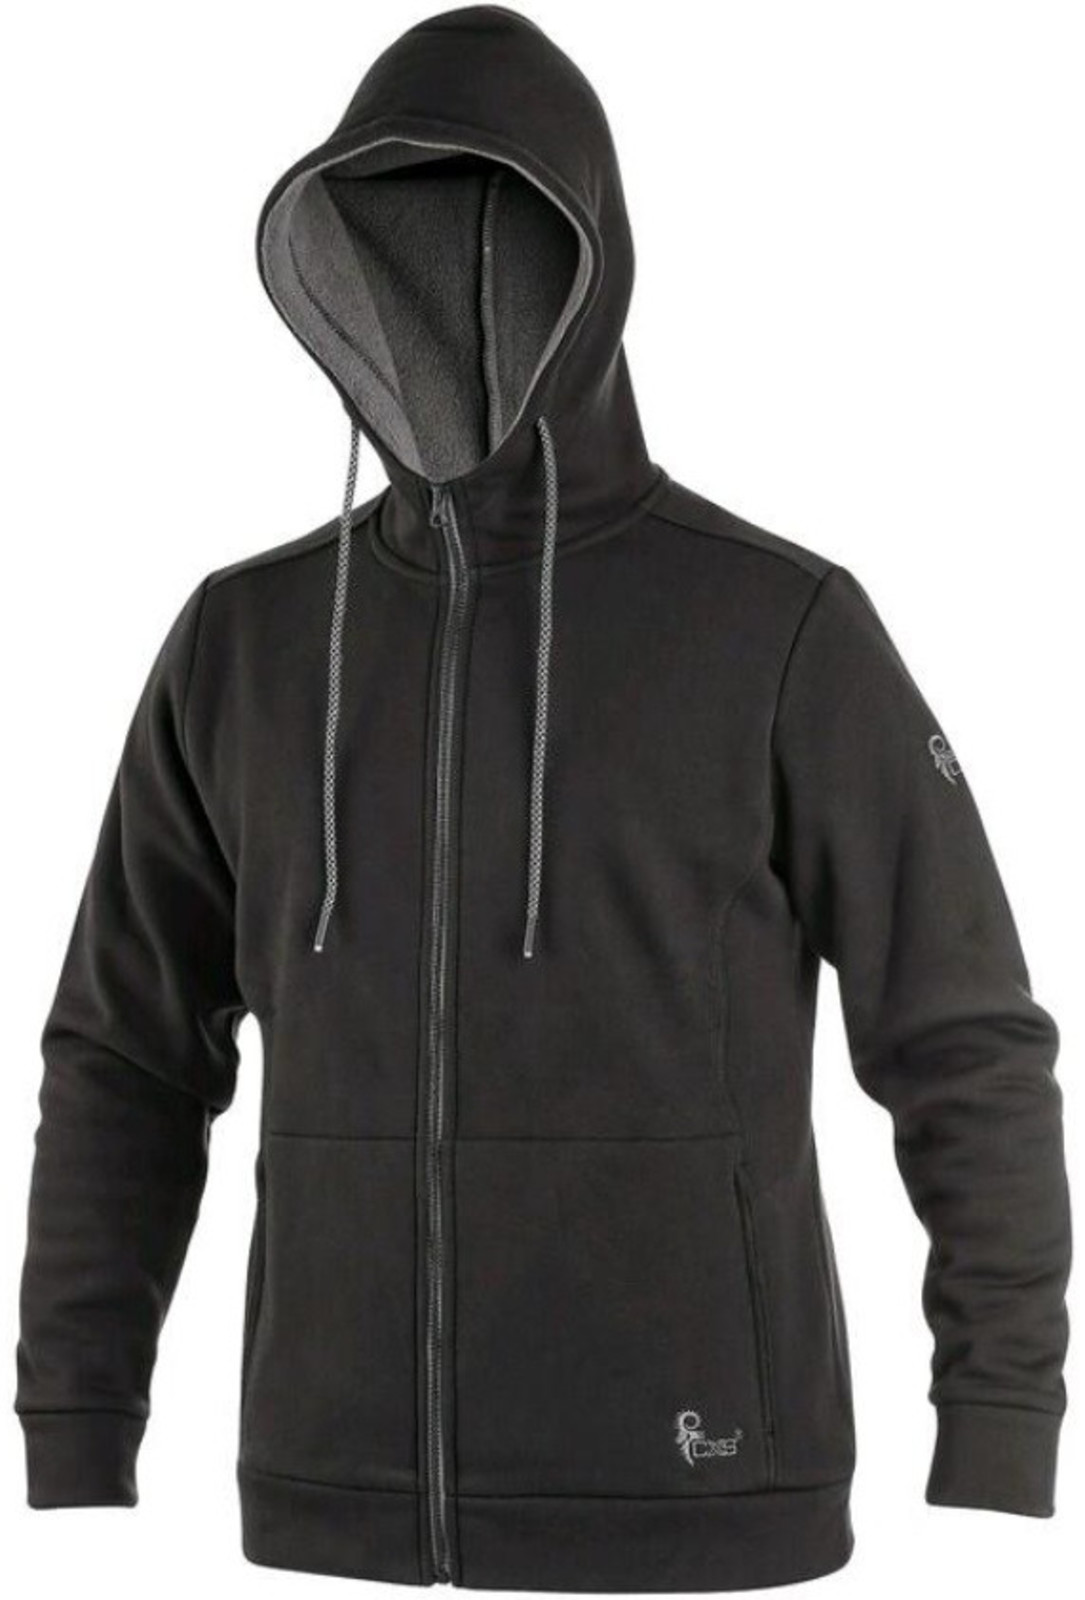 Mikina na zips s kapucňou CXS Harrison - veľkosť: XXL, farba: čierna/sivá